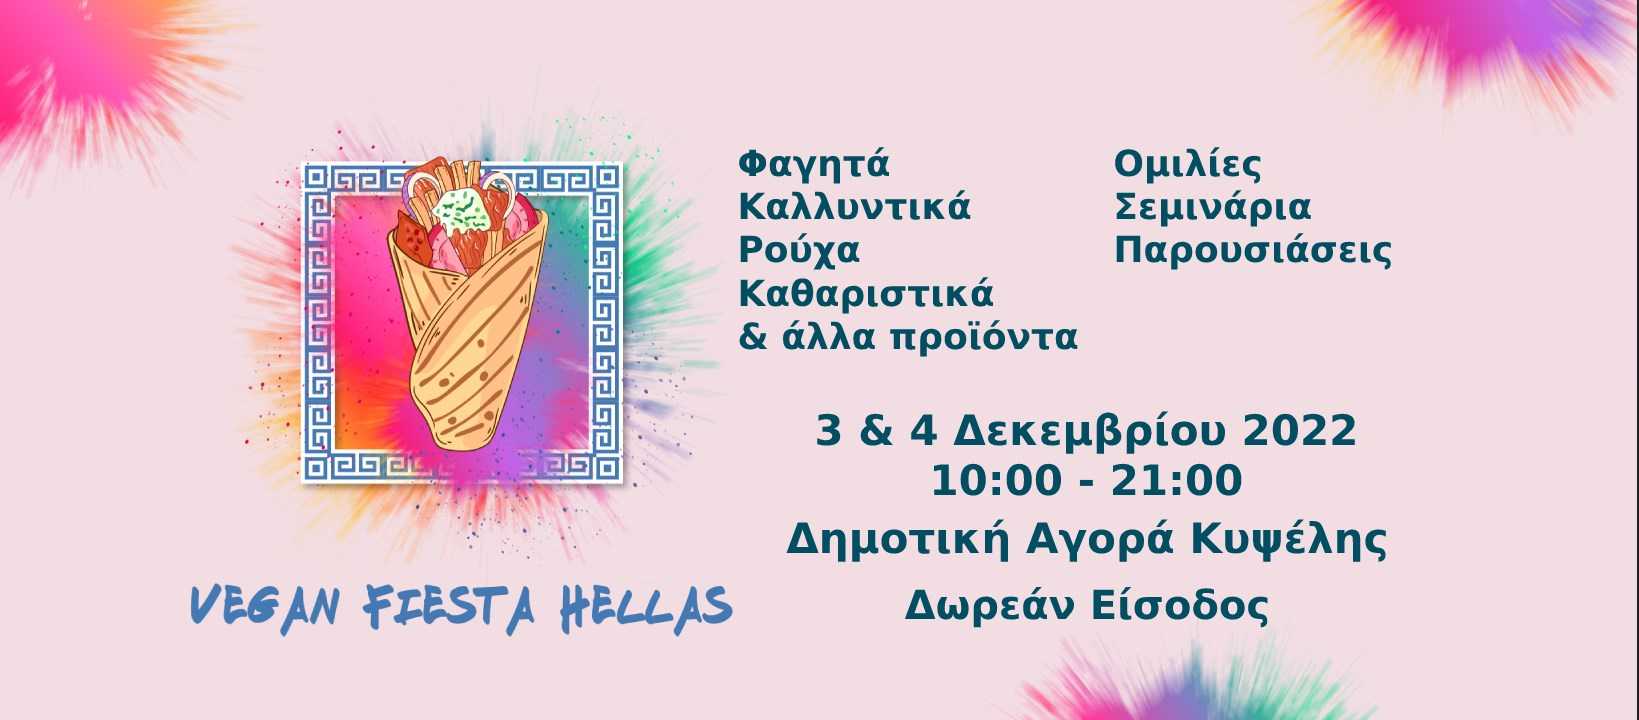 Εκδήλωση Vegan Fiesta Hellas στις 3-4 Δεκεμβρίου στην Αθήνα